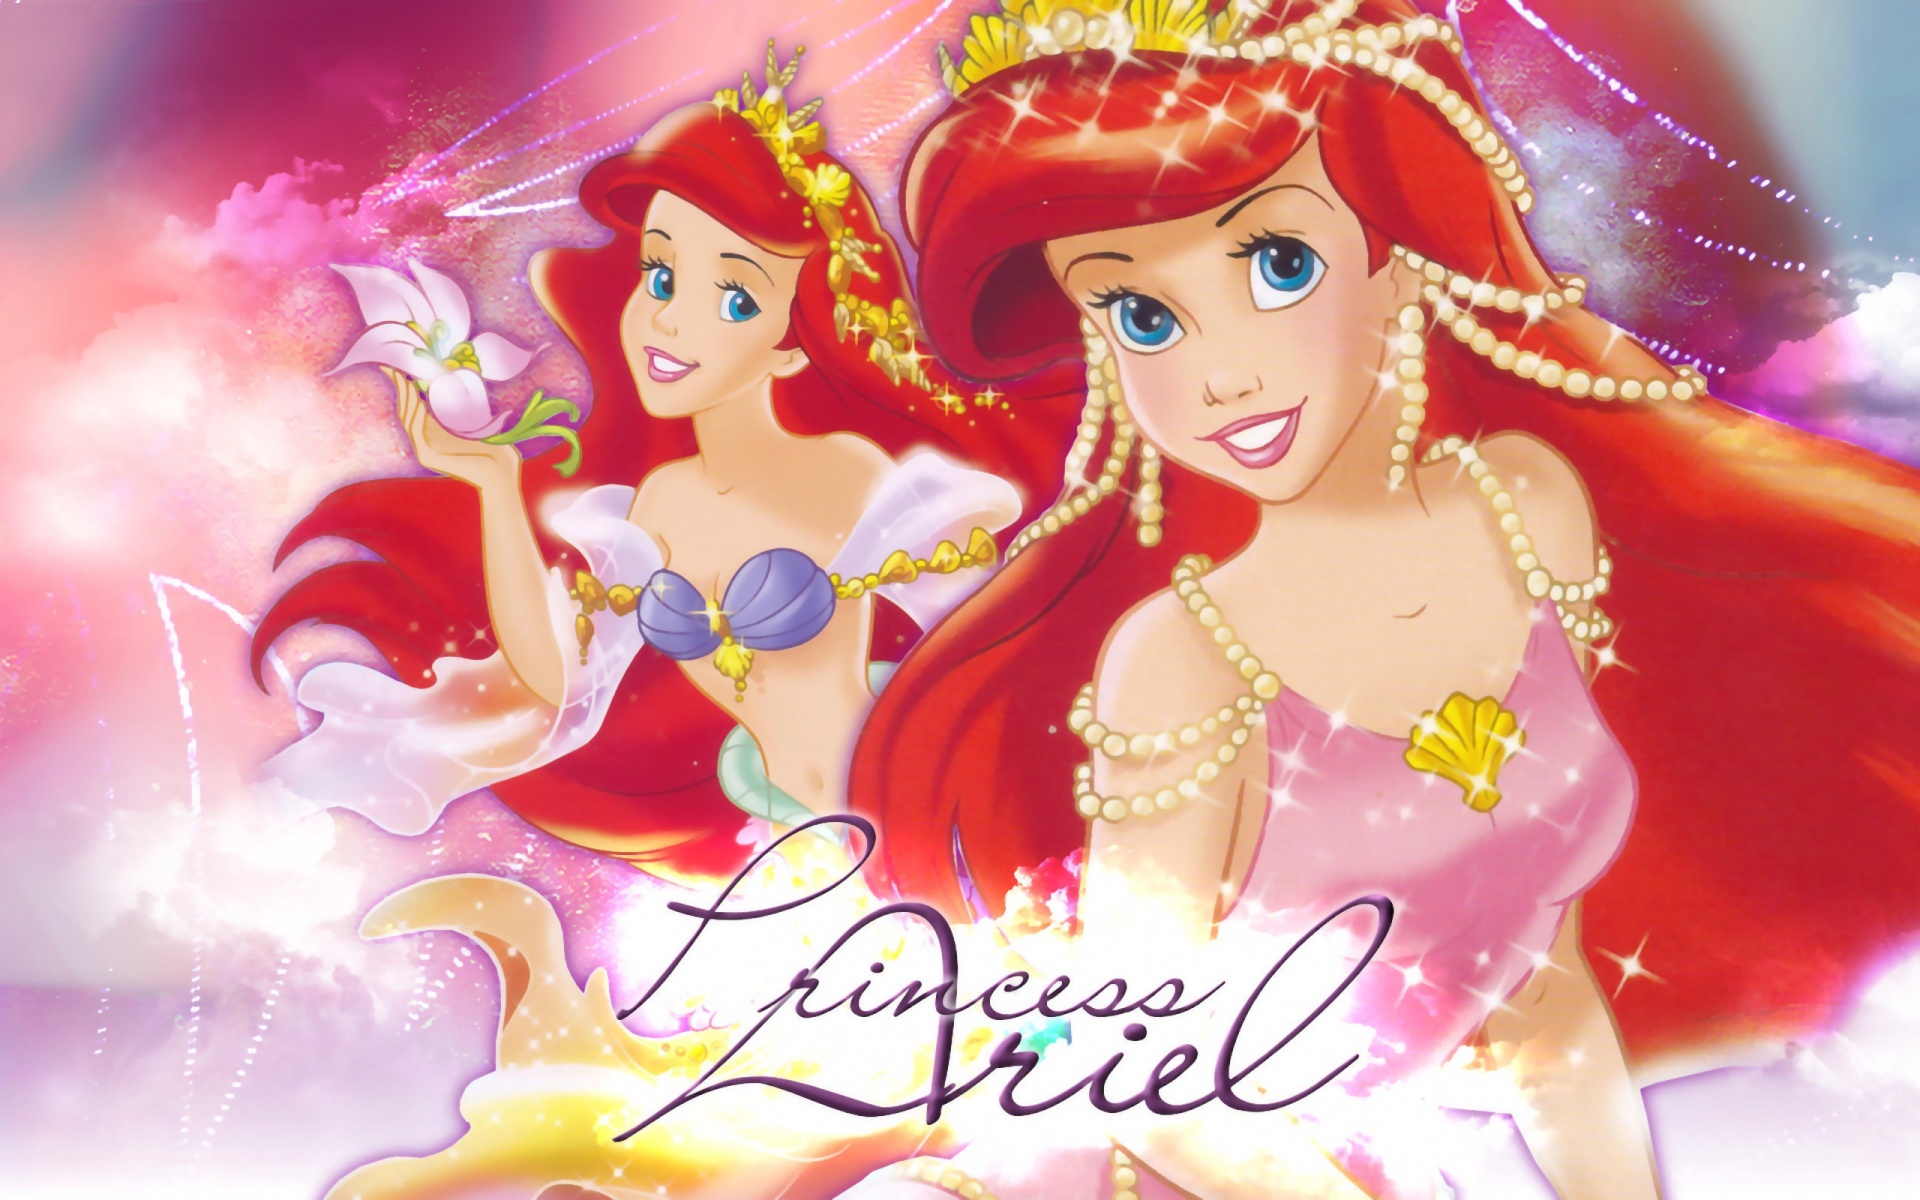 the little mermaid, movie, the little mermaid (1989), ariel (the little mermaid), mermaid, red hair